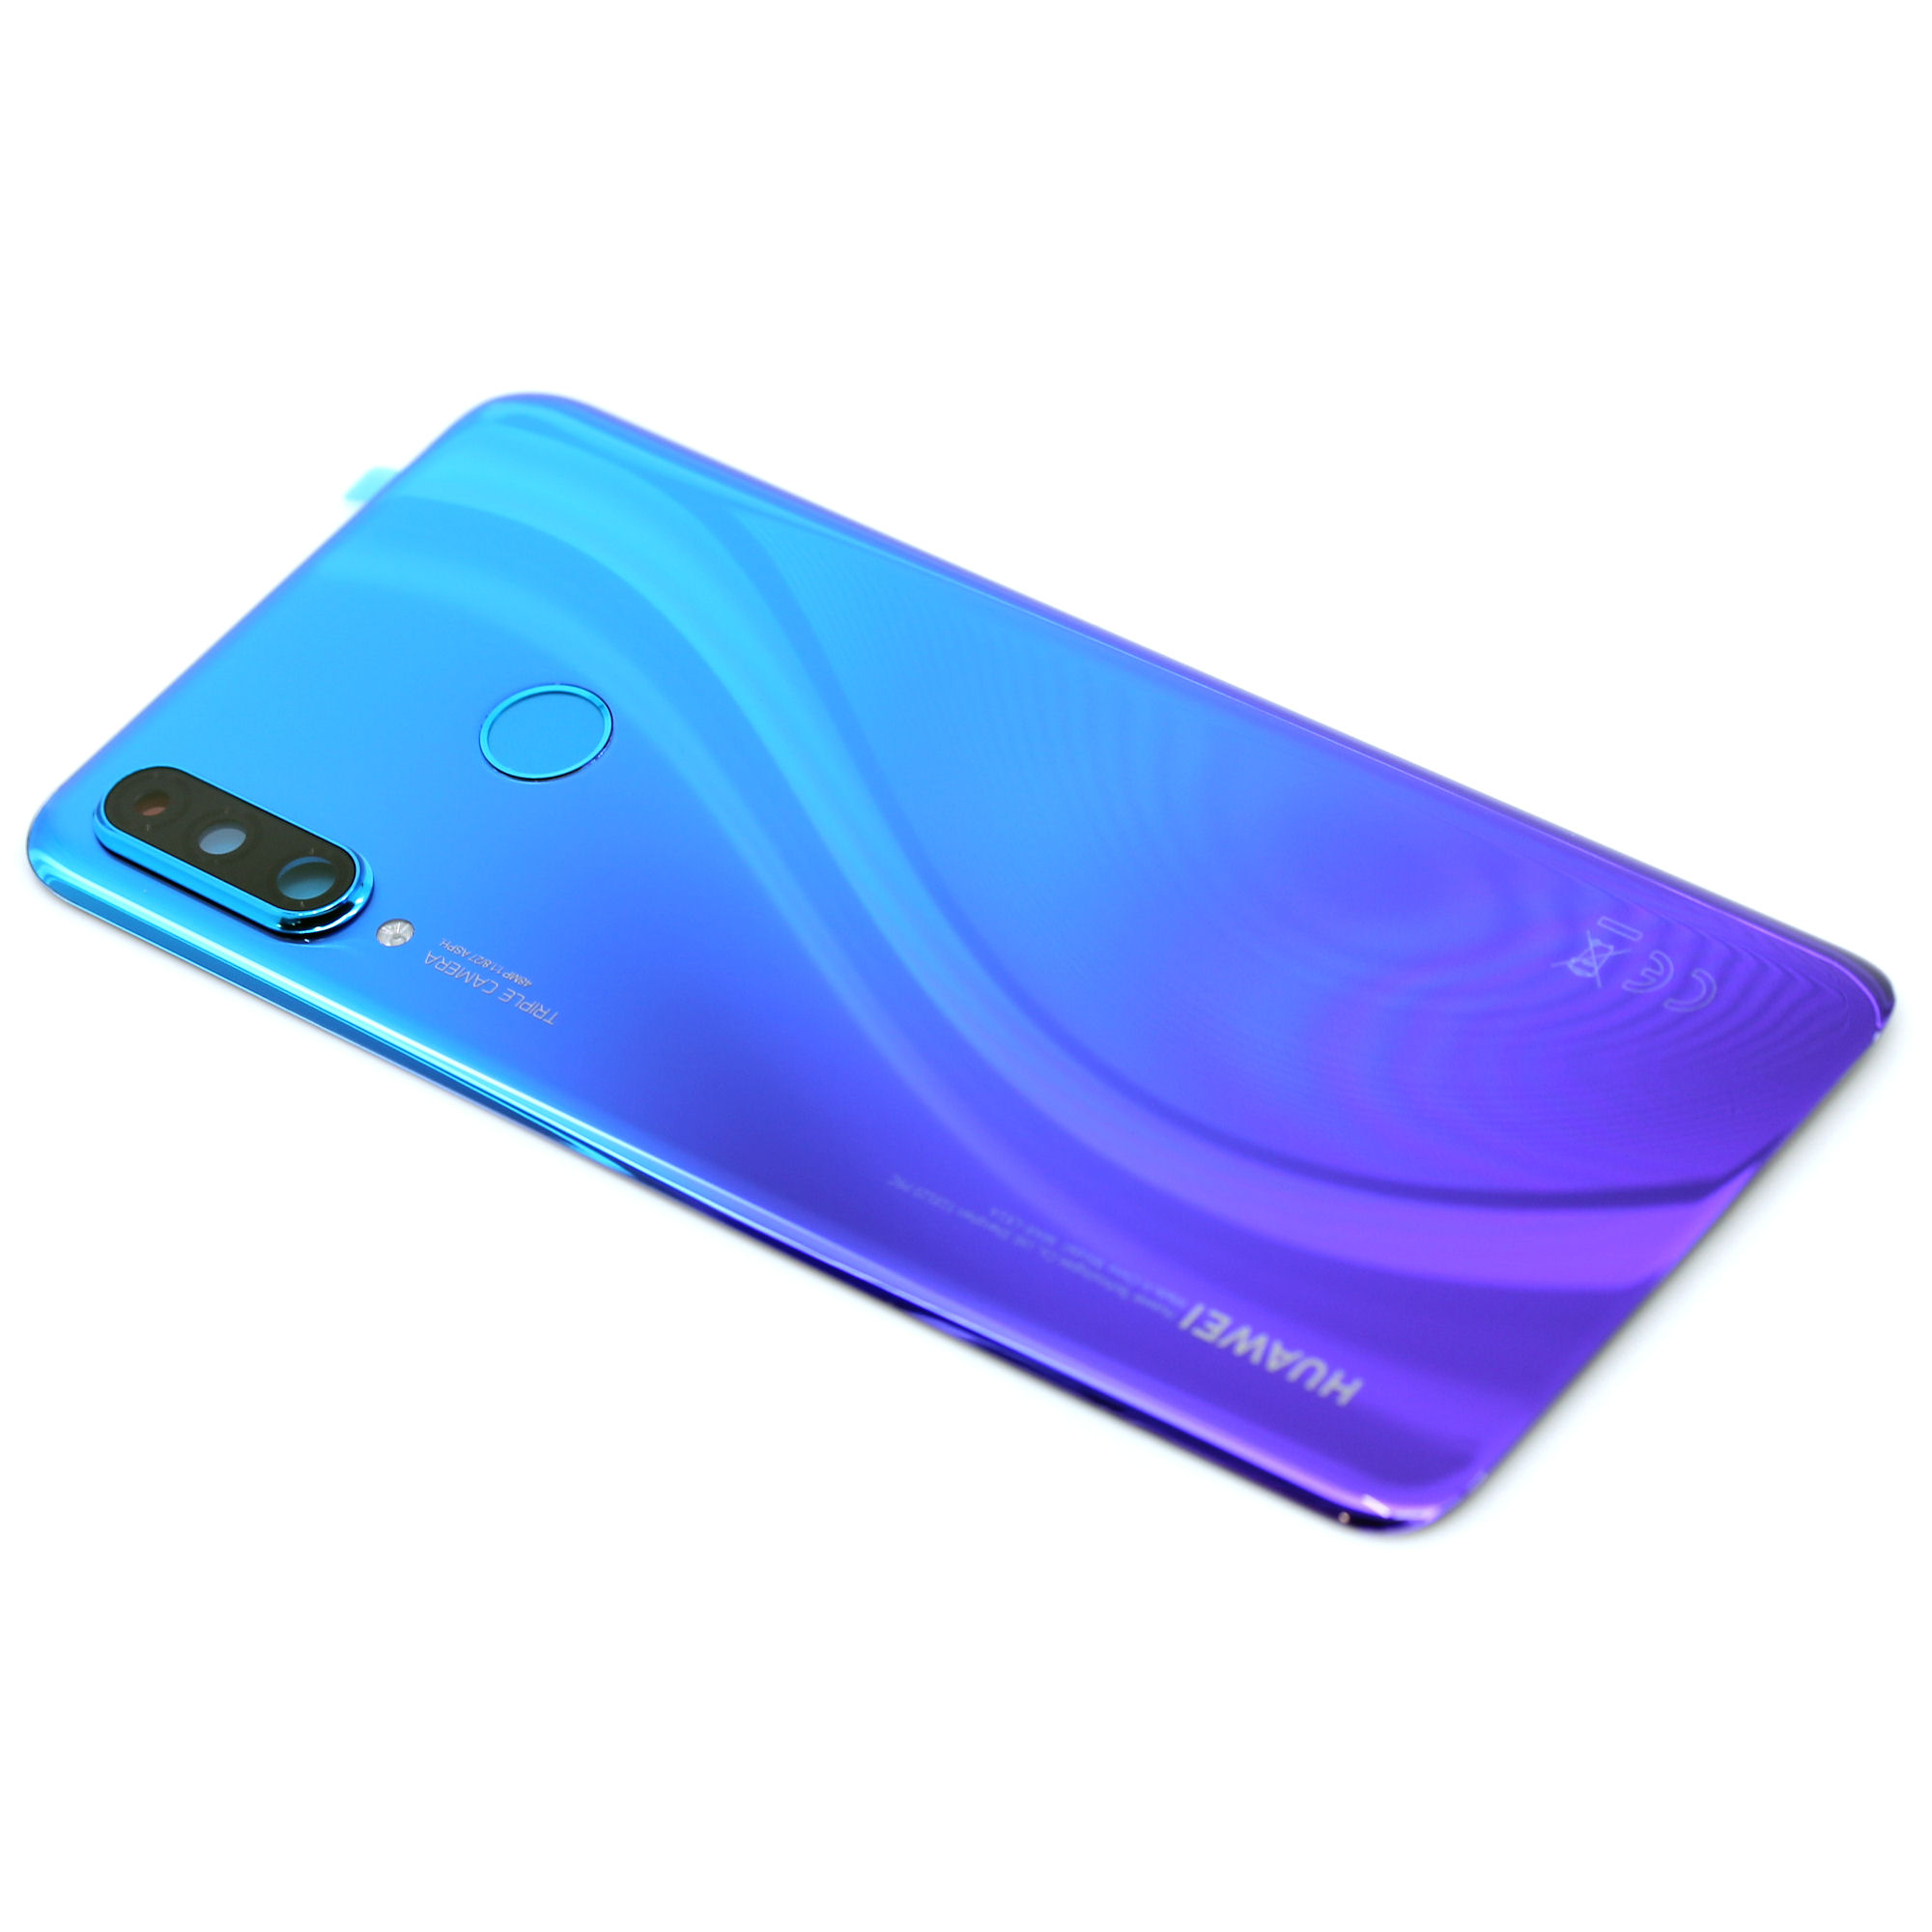 Huawei P30 Lite (MAR-LX1A) / NewEdition (MAR-LX1B) Akkudeckel peacock blau